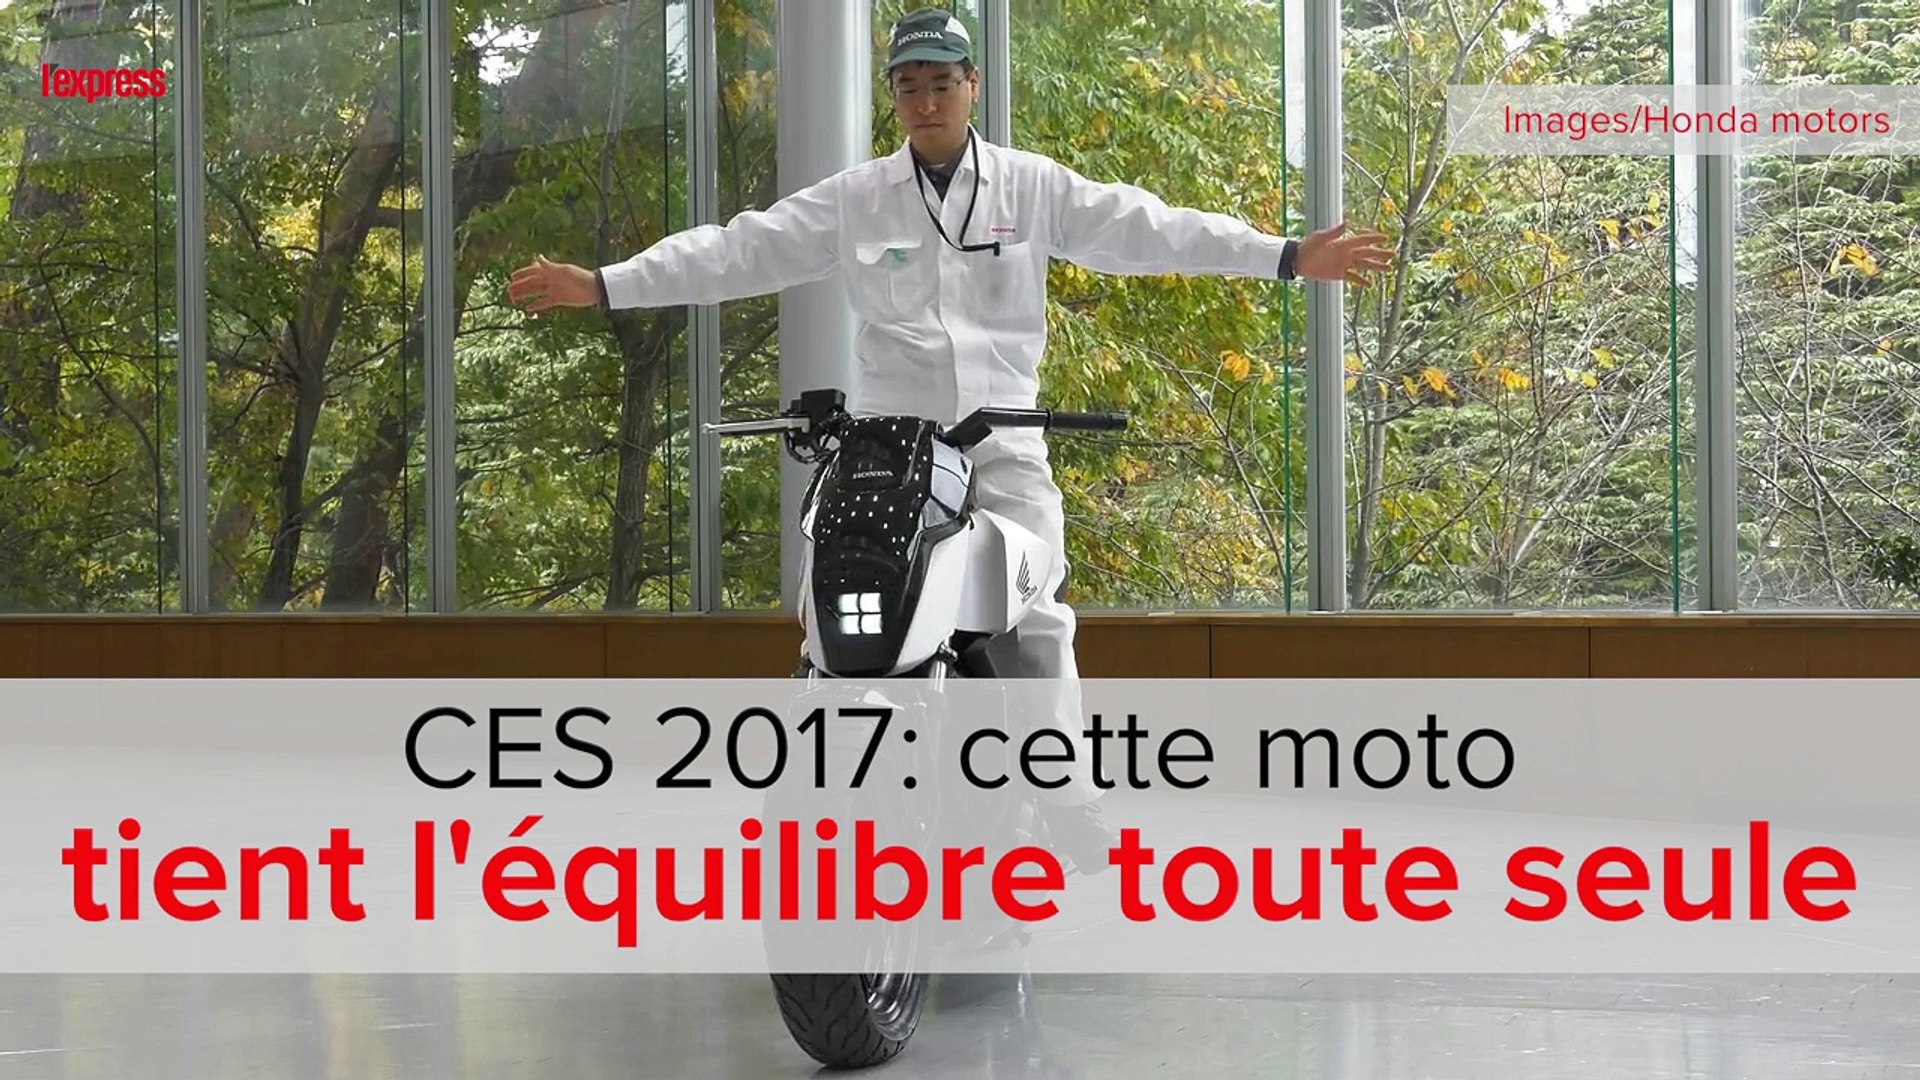 CES 2017: cette moto tient l'équilibre toute seule - Vidéo Dailymotion